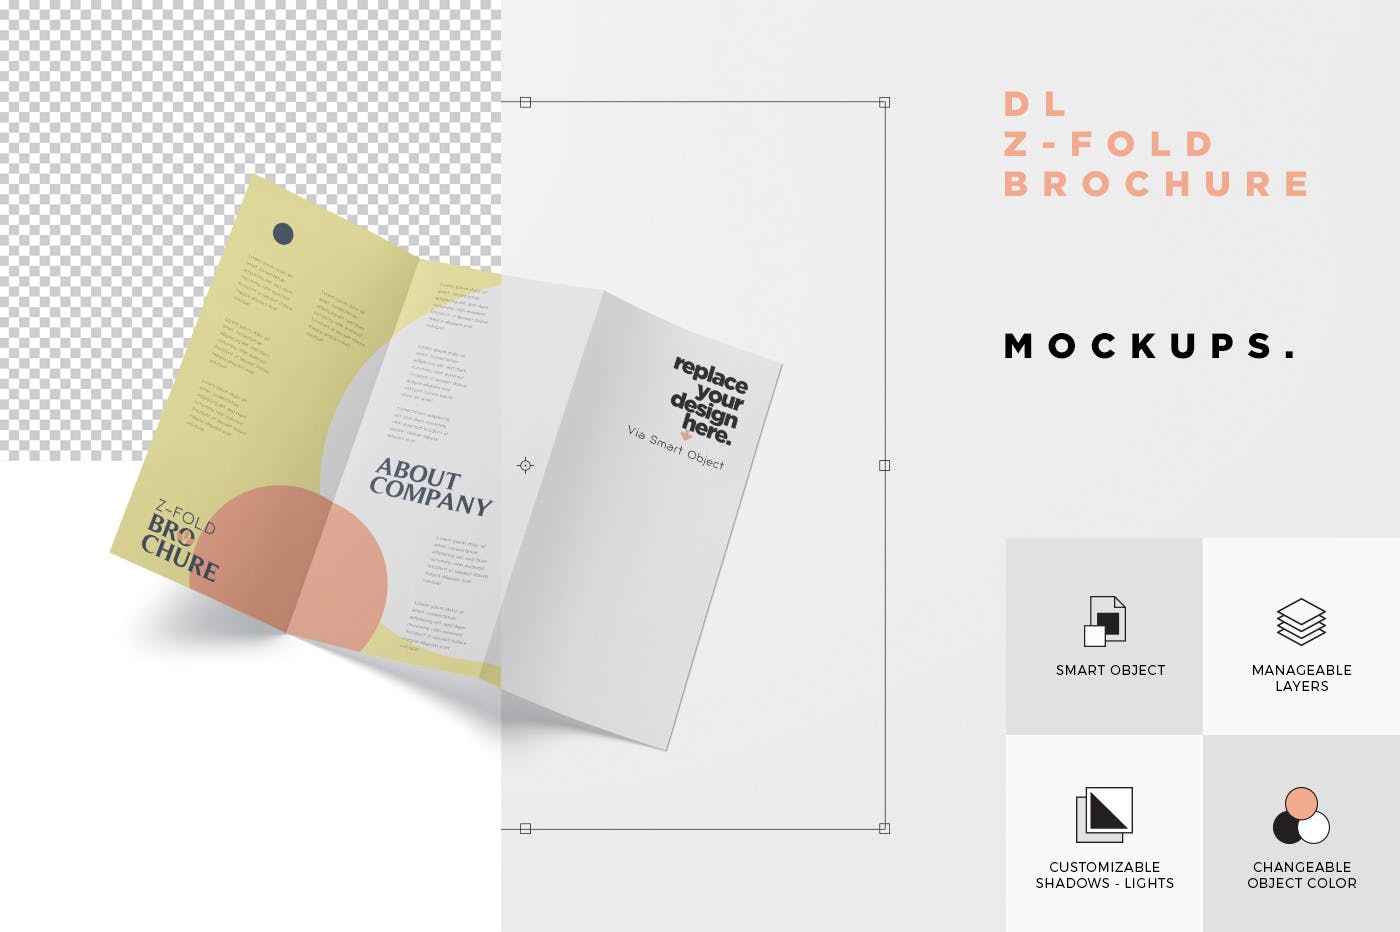 三折页设计风格企业传单/宣传单设计图样机素材库精选 DL Z-Fold Brochure Mockup – 99 x 210 mm Size插图(7)